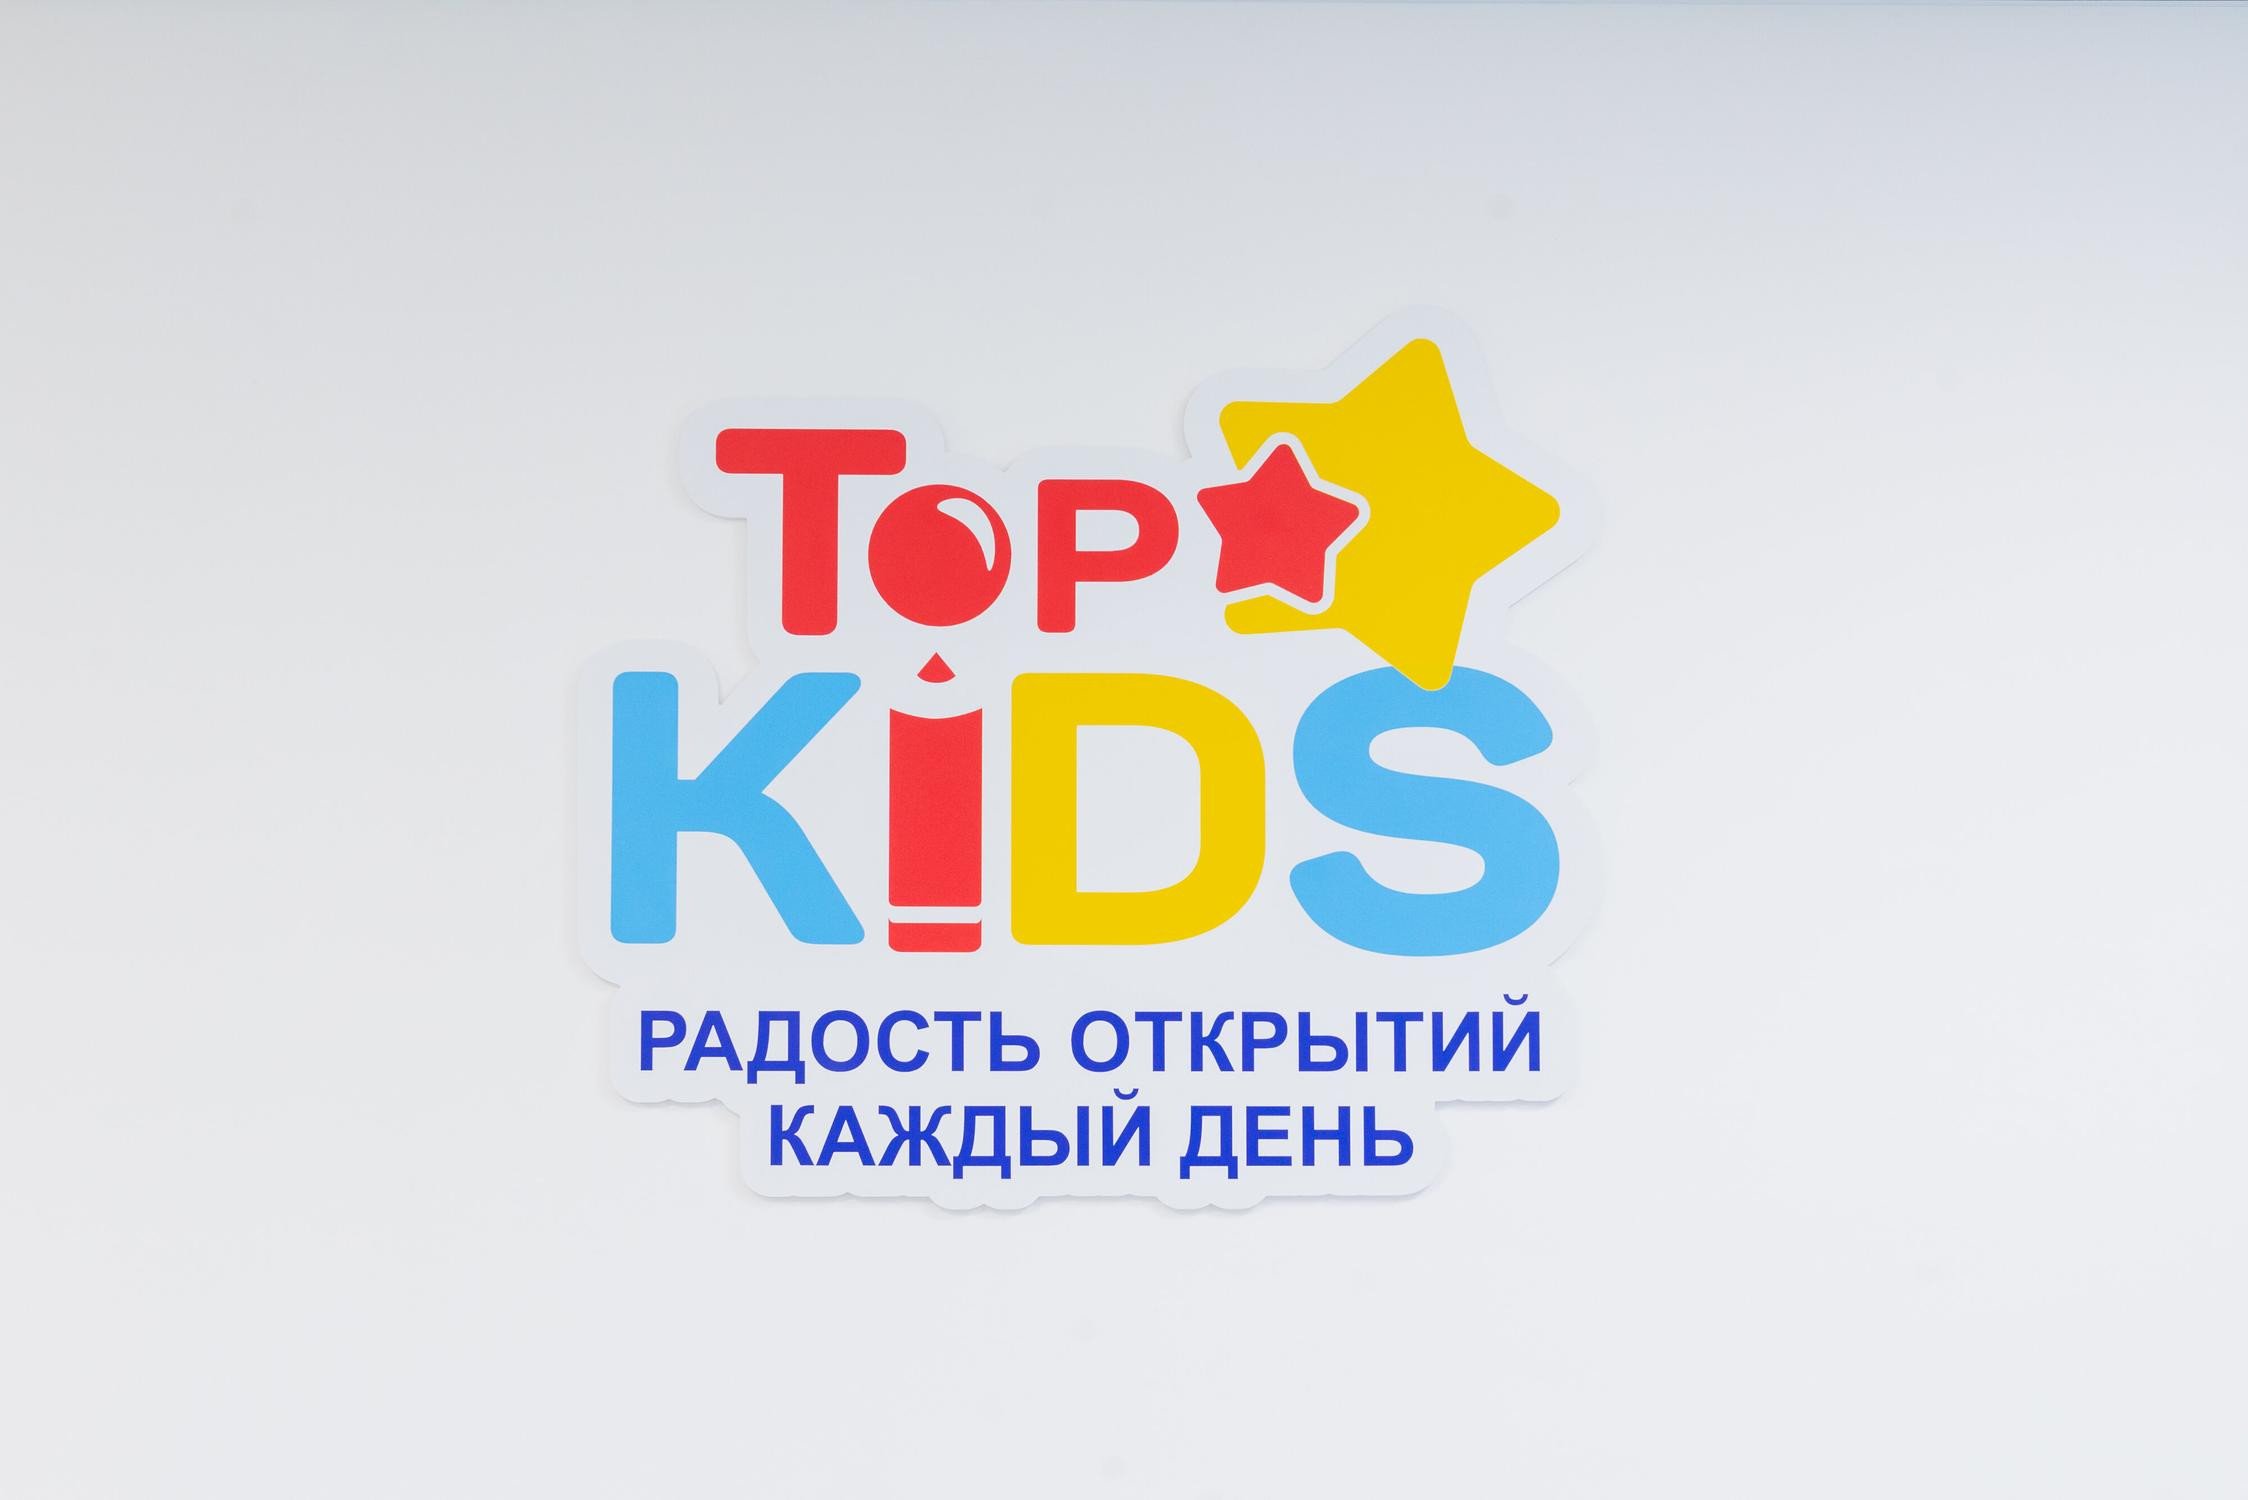 Частный детский сад Top KIDS